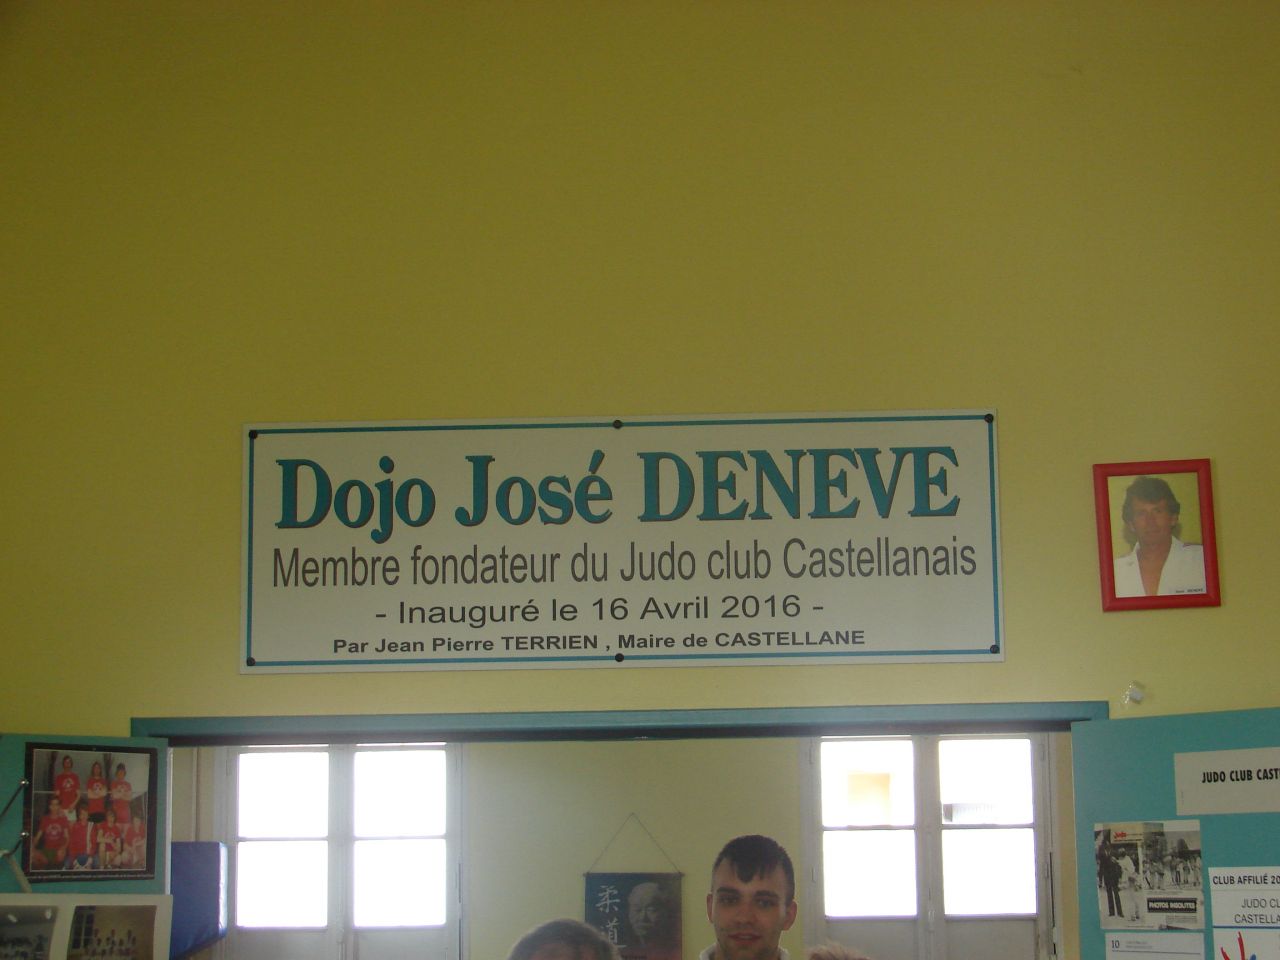 Dojo Jose Deneve 2016